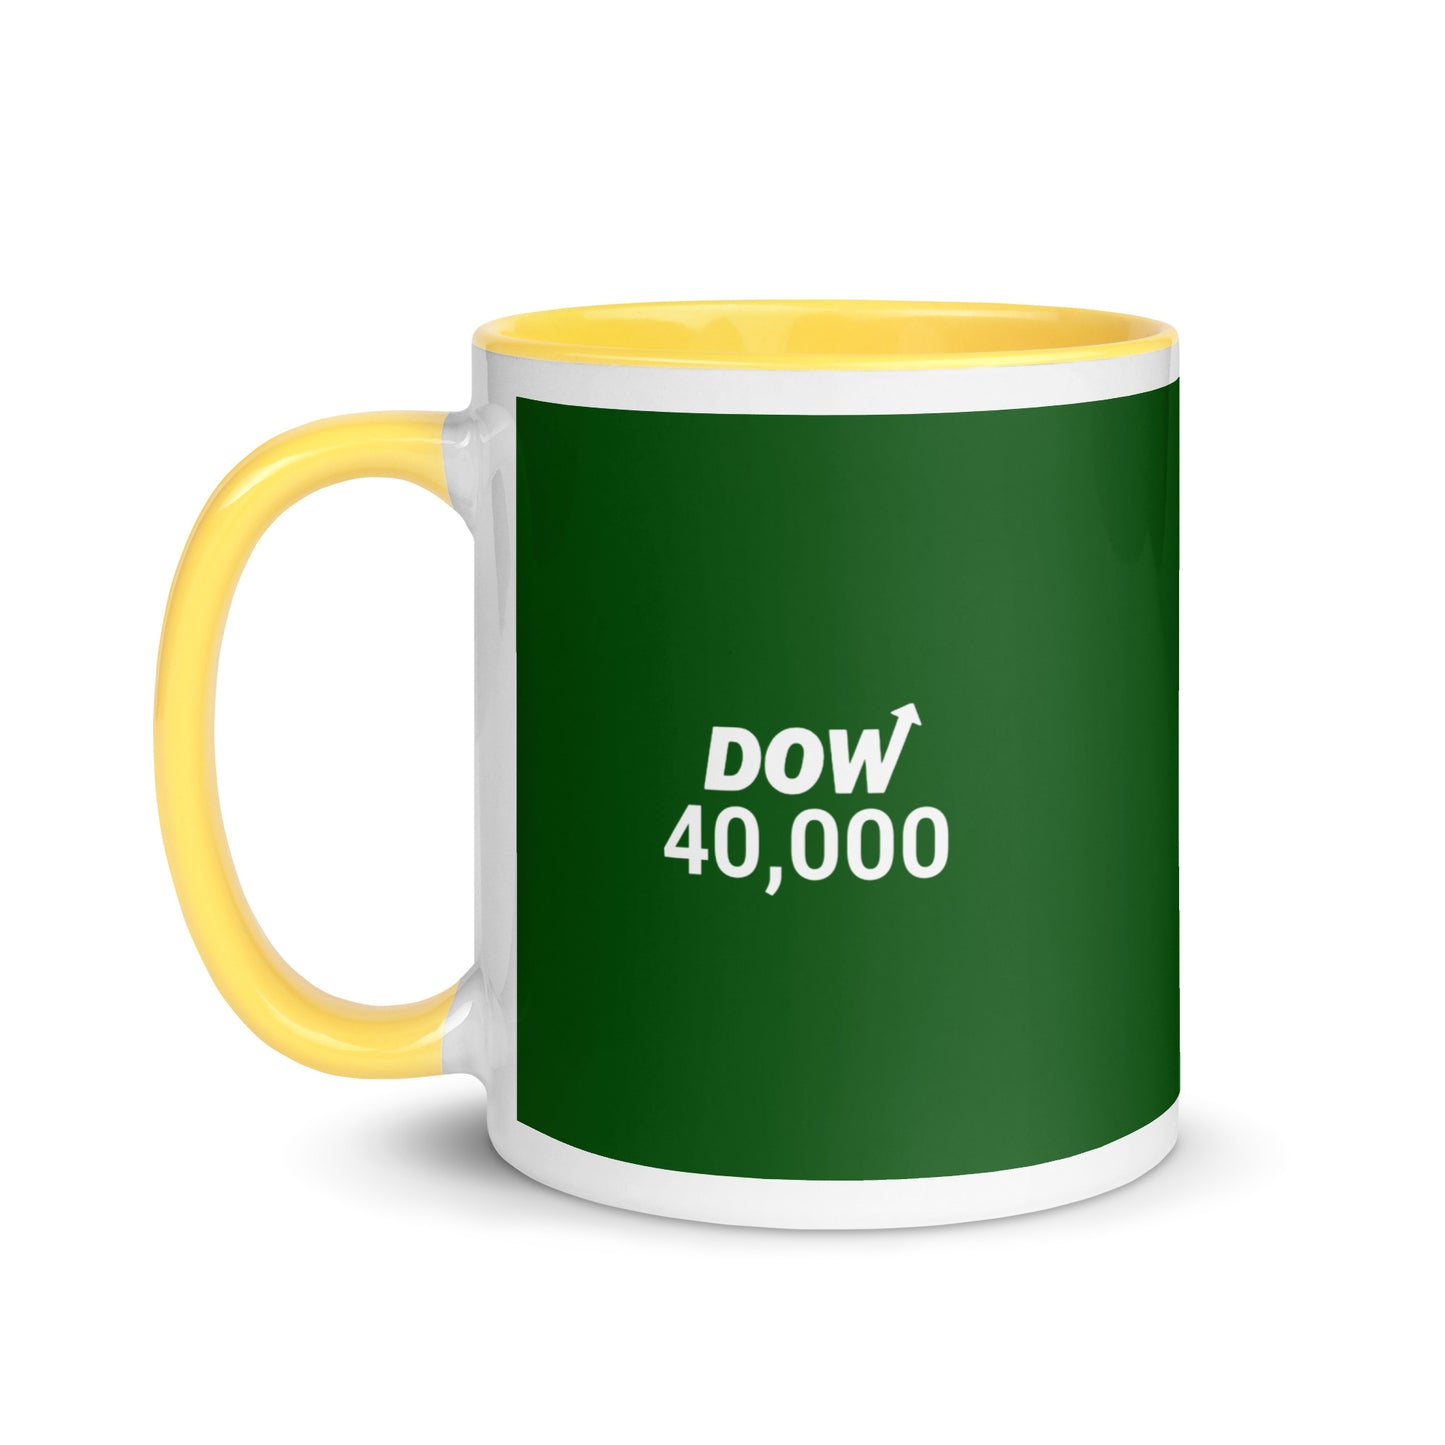 Dow 40.000 Mug / Dow 40k Mug / Dow 40000 Mug with Color Inside